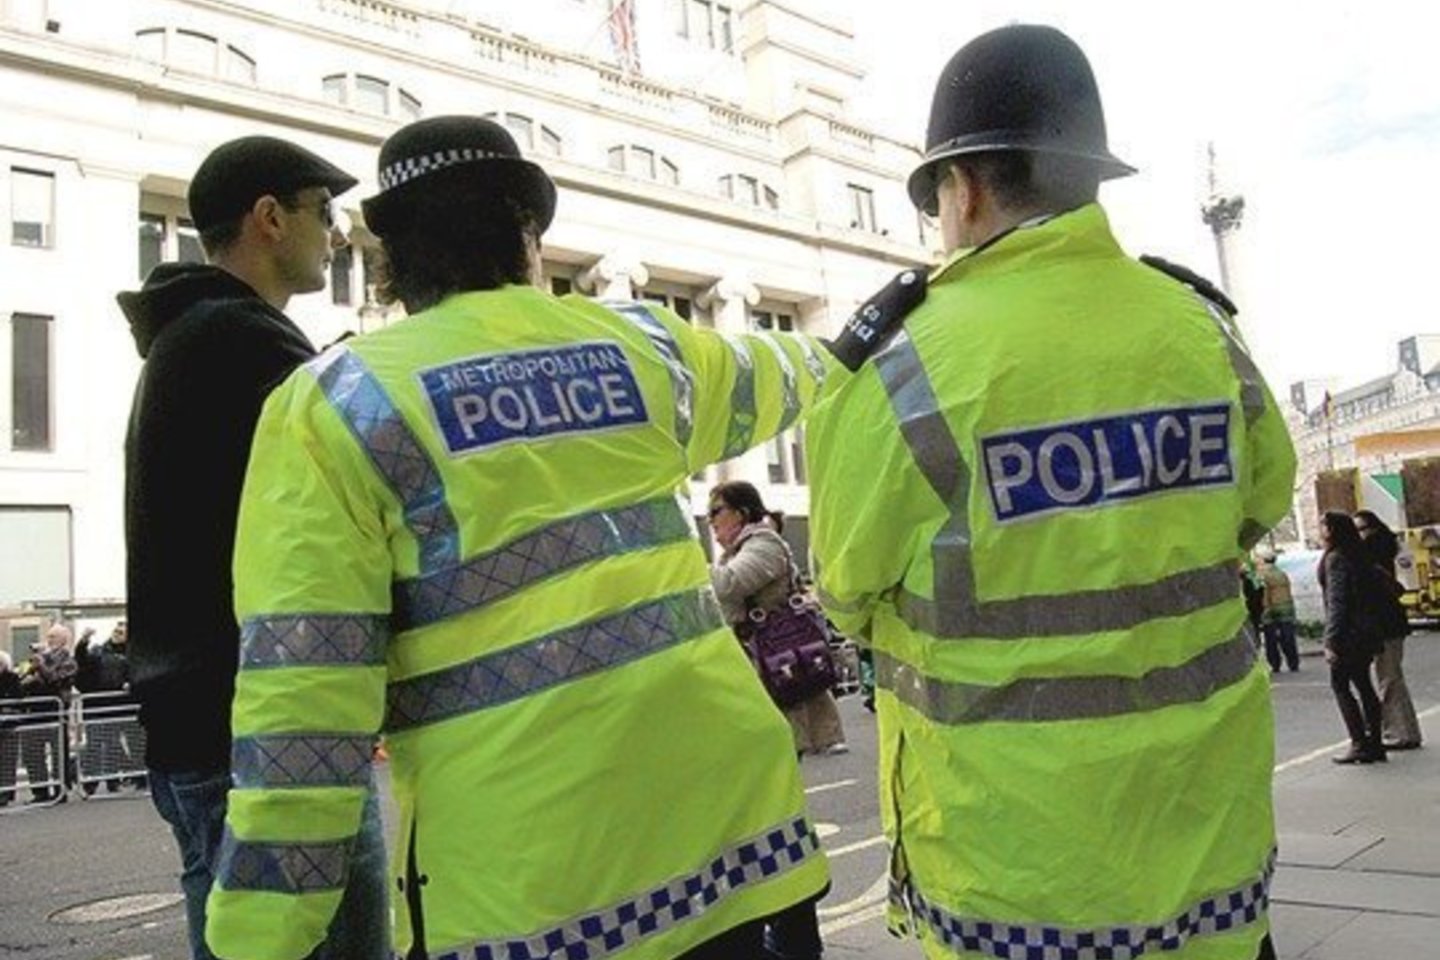 Didžiojoje Britanijoje trečiadienį mirė šimtametė senolė, kuriai per gatvės apiplėšimą buvo sulaužytas kaklas, pranešė pareigūnai.